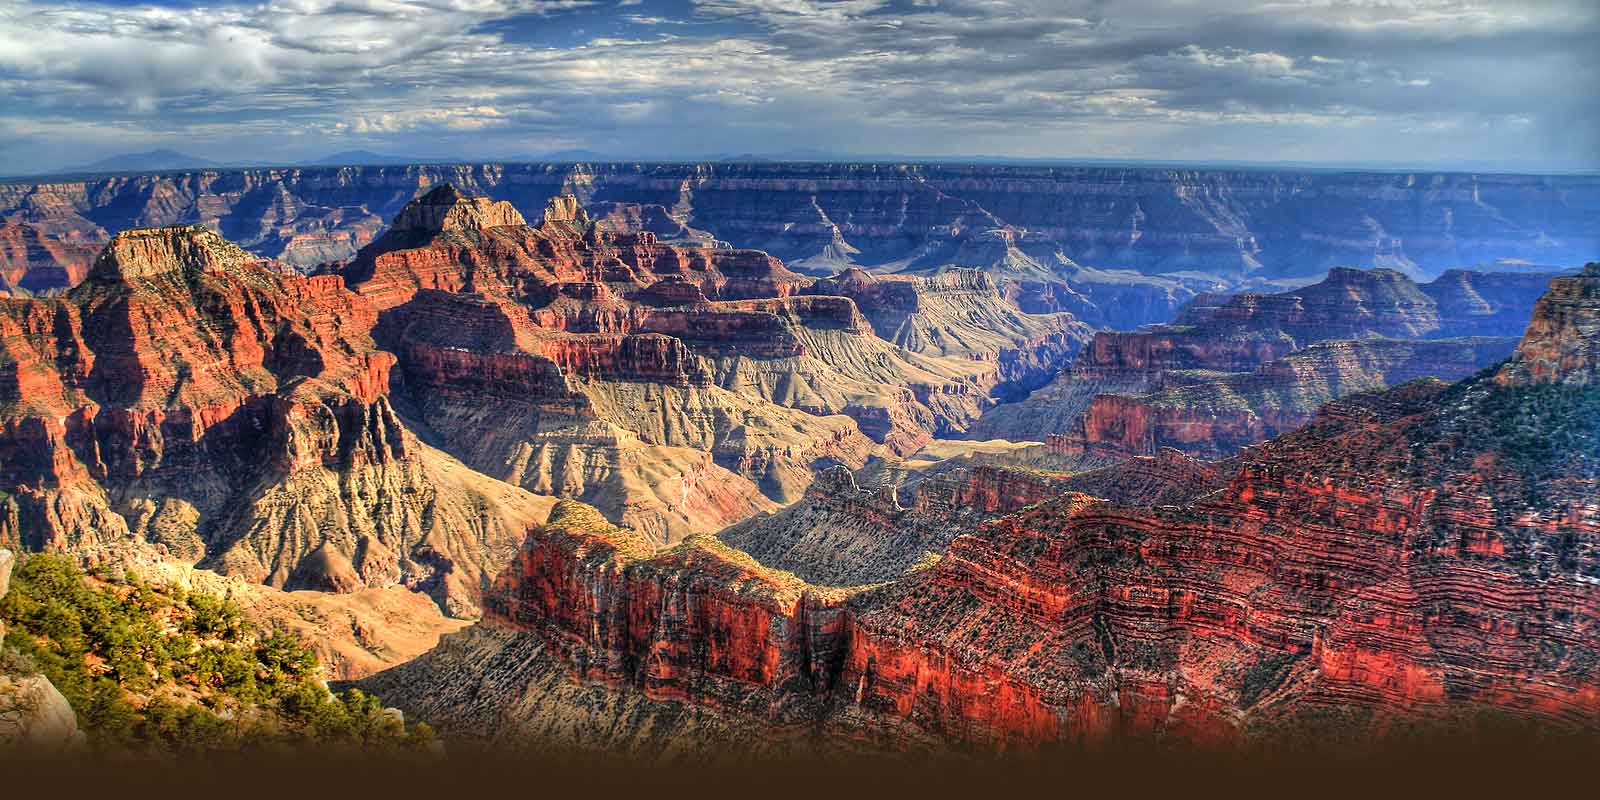 Công viên quốc gia Grand Canyon, Mỹ: Công viên này có niên đại địa chất 2 tỷ năm với hiện tượng thiên nhiên kỳ thú là hẻm núi Grand Canyon bị sông Colorado cắt, tạo nên một khe núi dài 446 km, sâu 1,6 km.